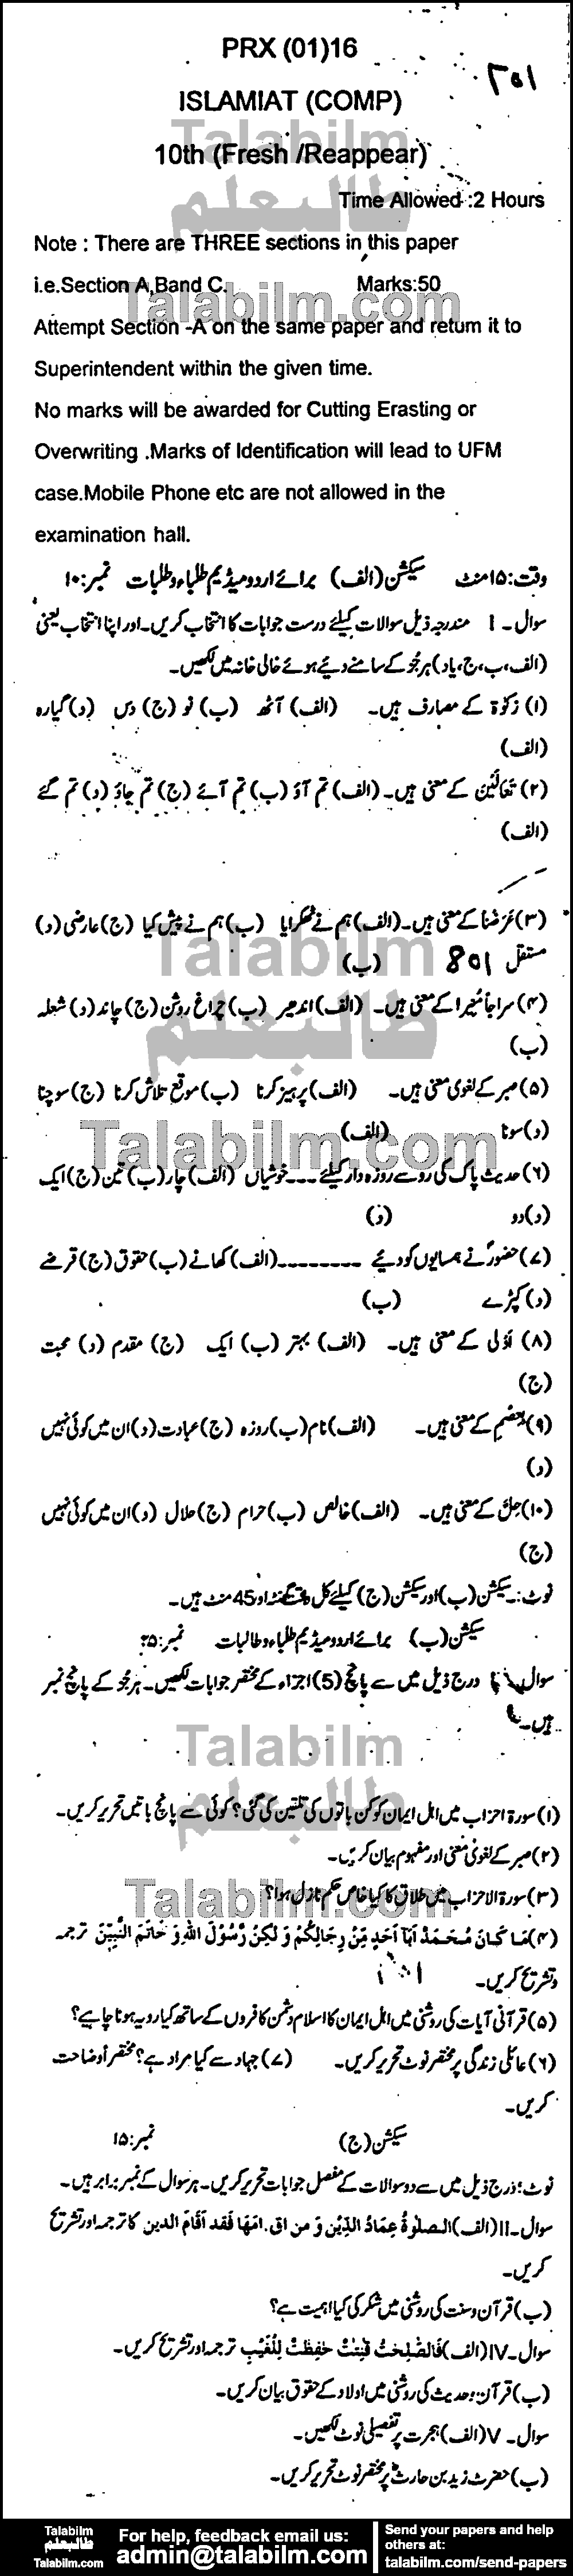 Islamiat Compulsory 0 past paper for Urdu Medium 2016 Group-I